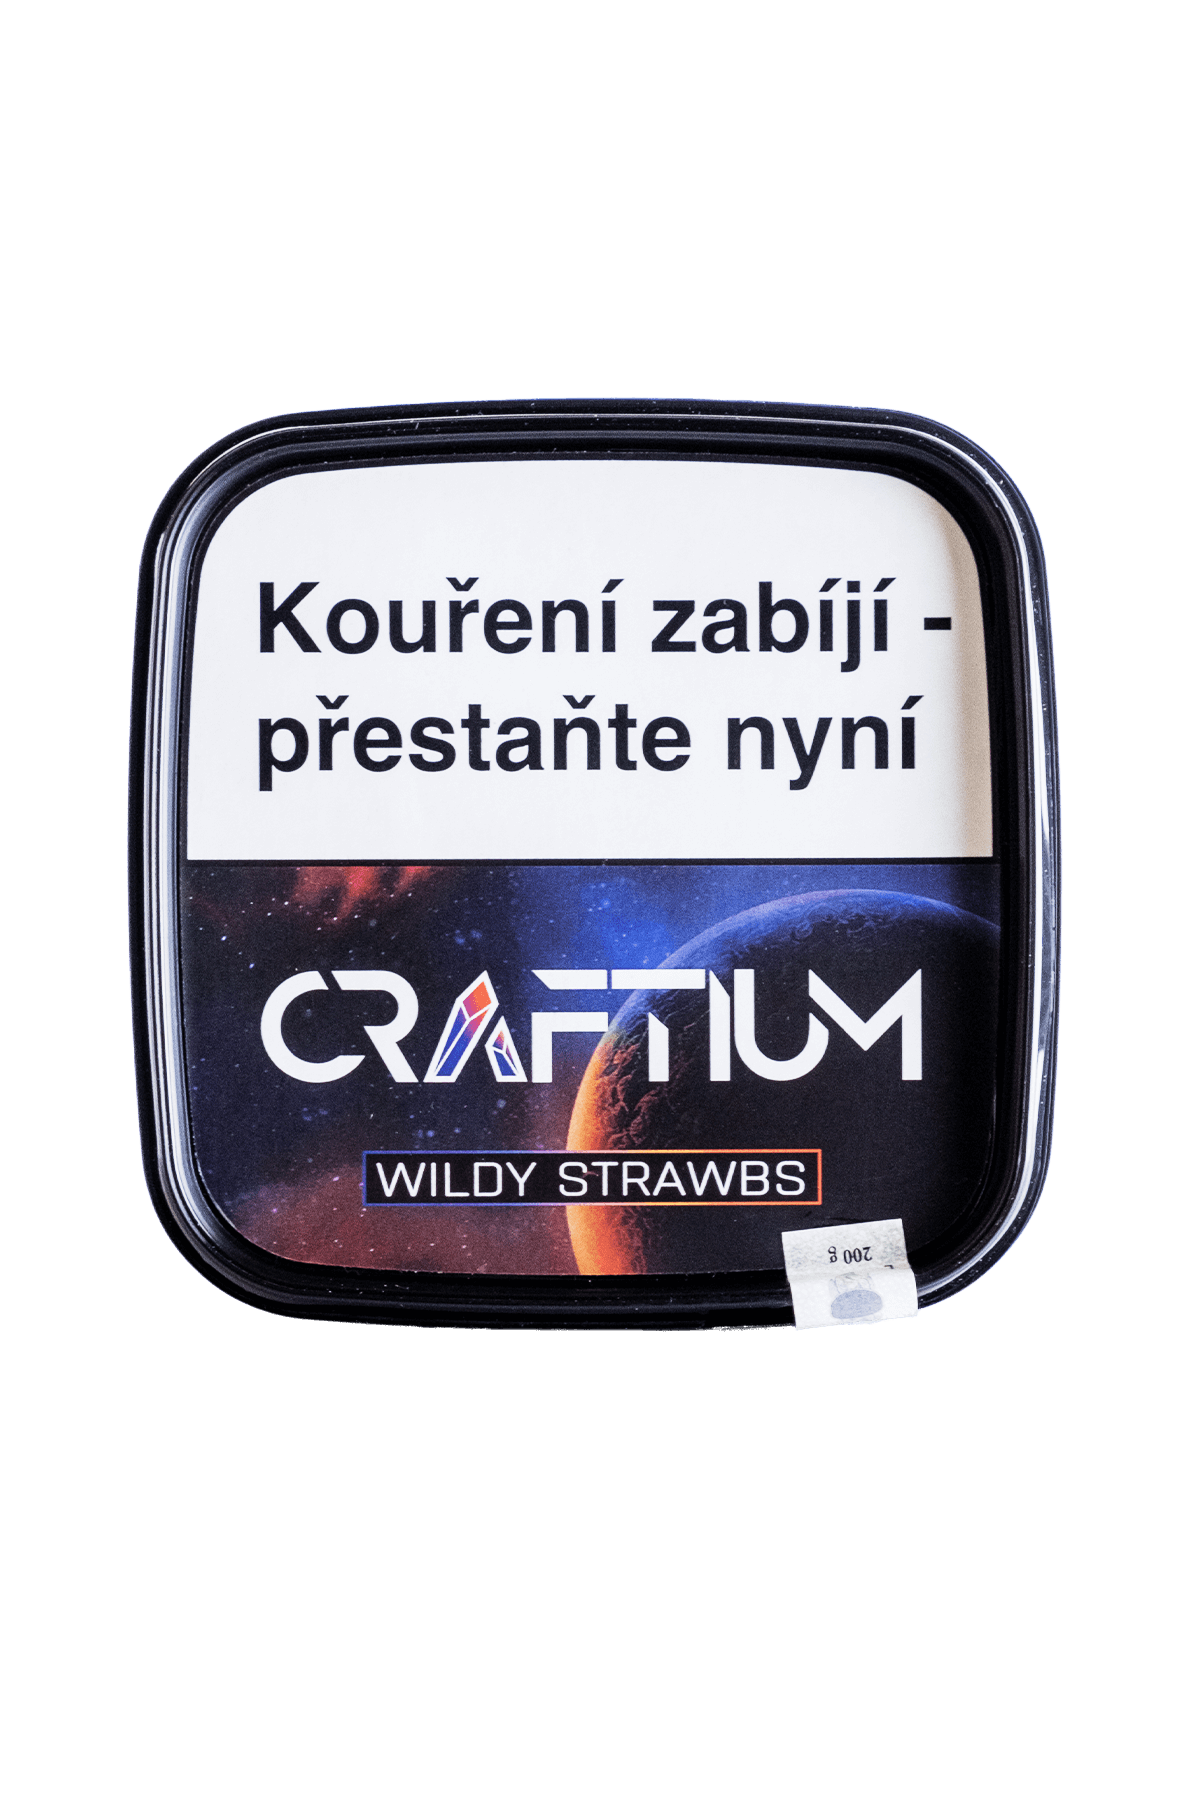 Tabák - Craftium 200g - Wildy Strawbs